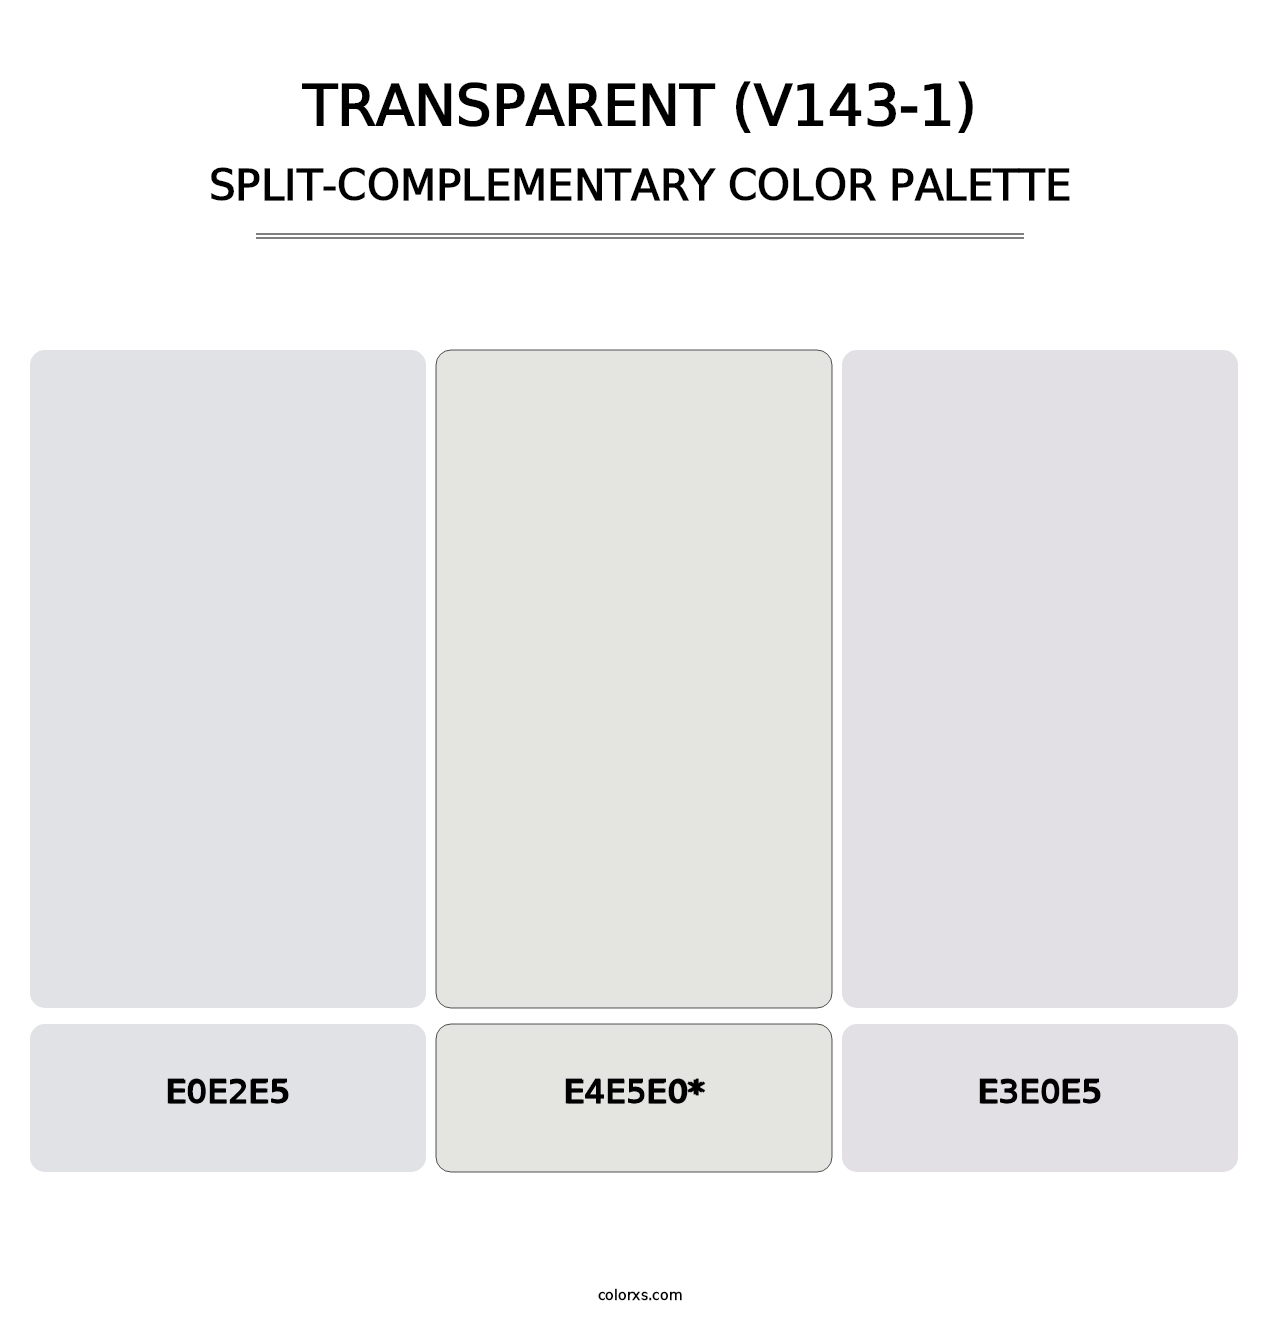 Transparent (V143-1) - Split-Complementary Color Palette